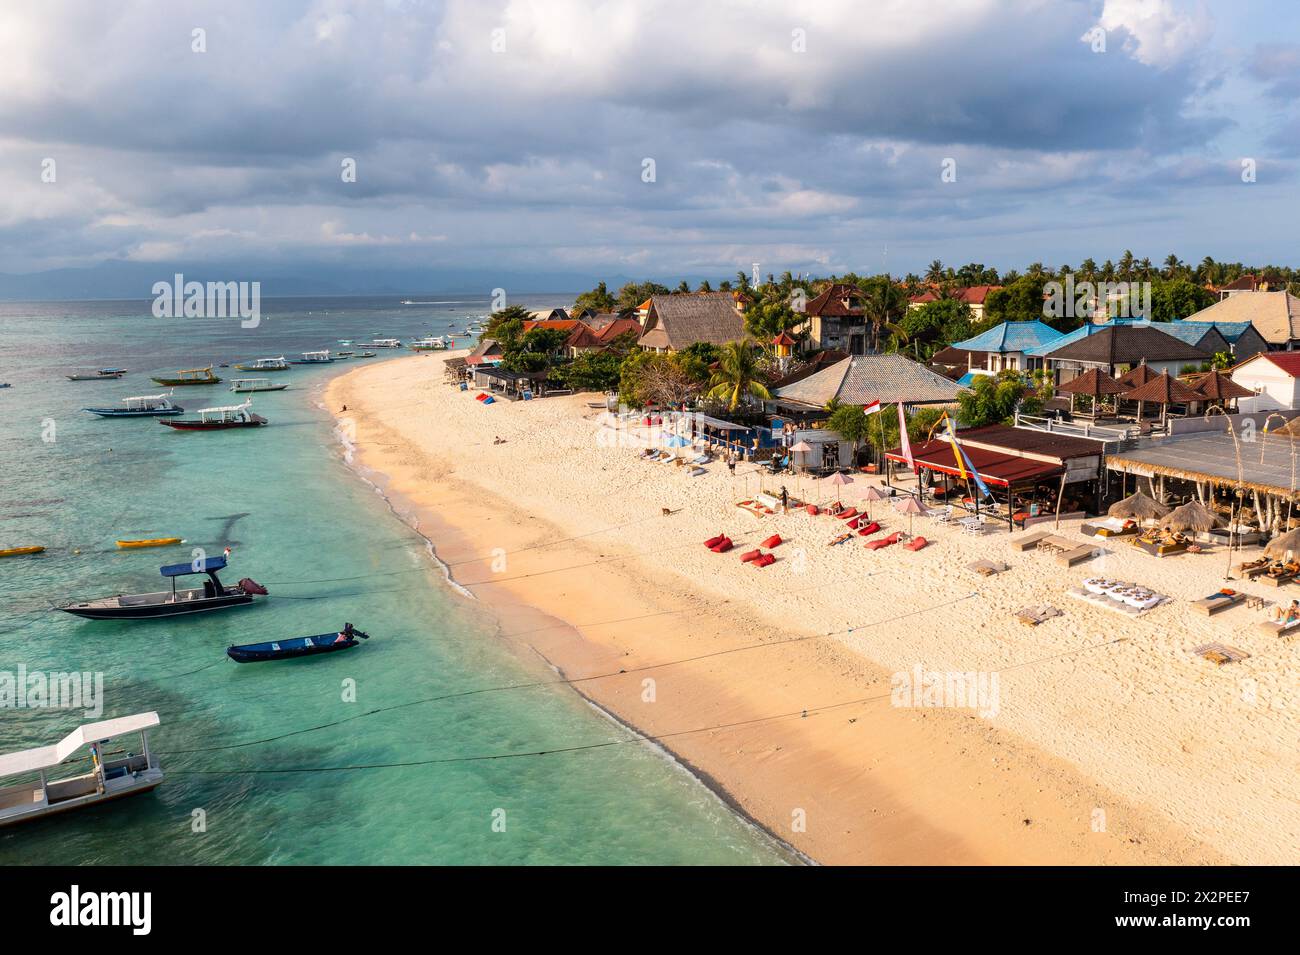 Nusa lembongan : vue aérienne par drone des touristes profitez de la plage Jungut Batu bordée de nouveaux clubs de plage et hôtels à Nusa Lembongan à Bali en Indonésie Banque D'Images